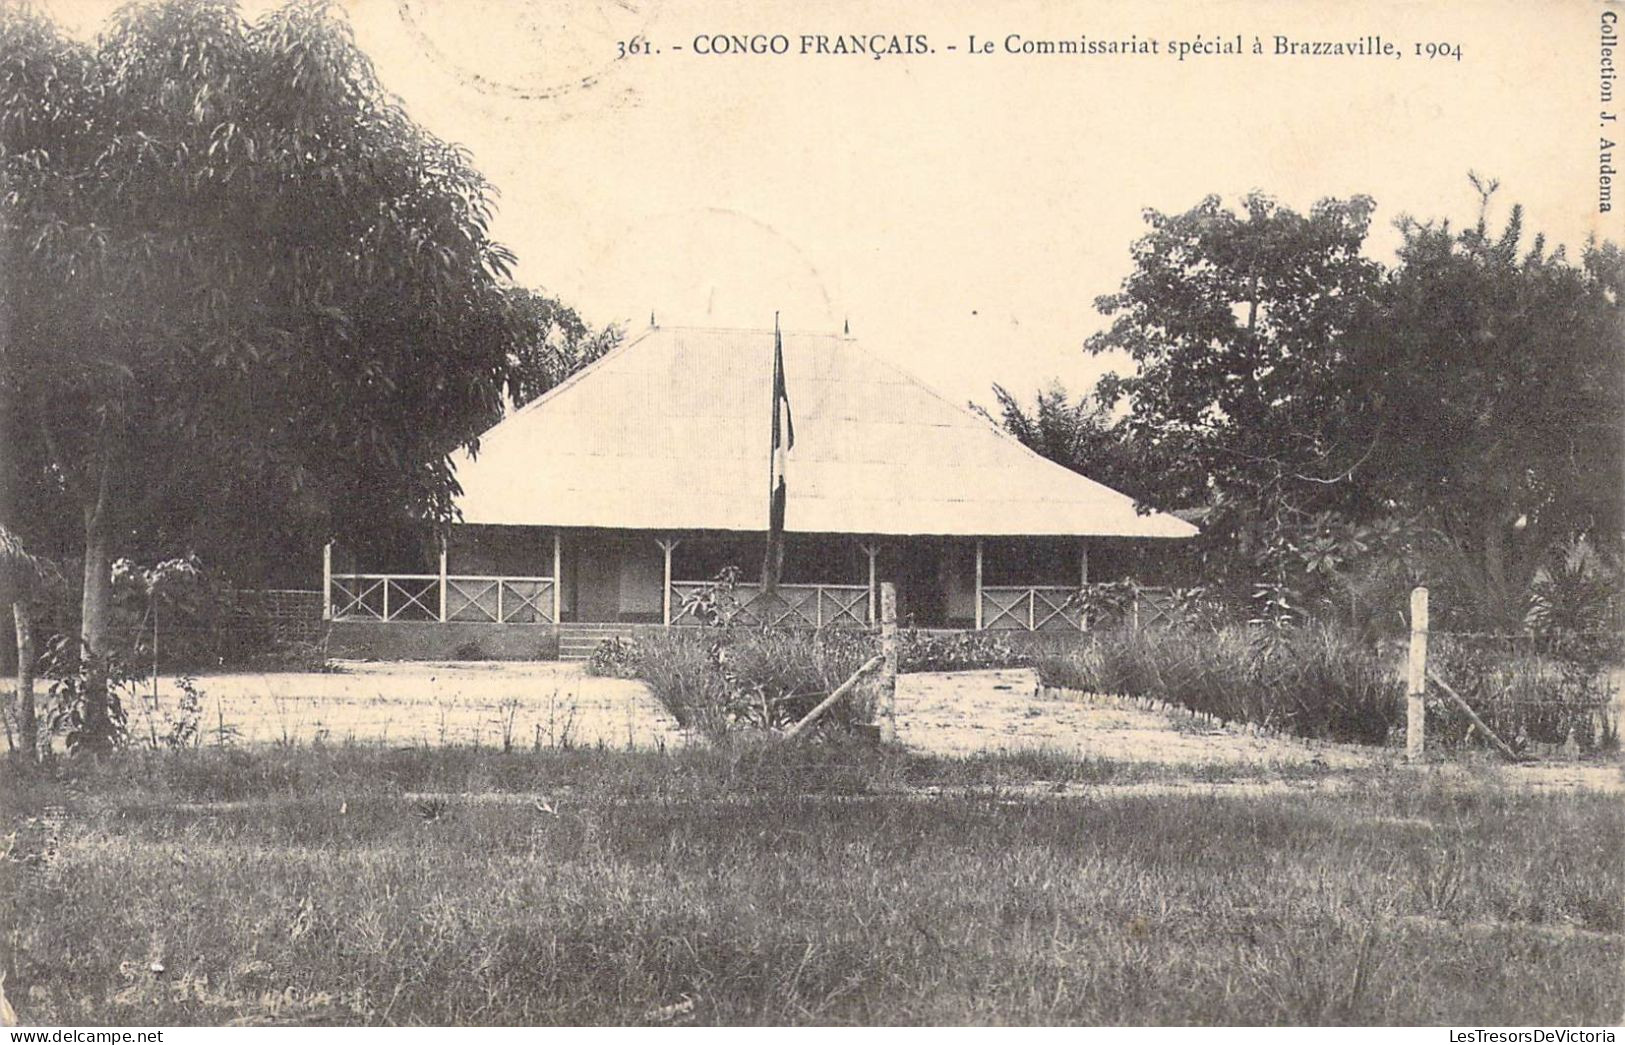 CONGO - Congo Français - Le Commissariat Spécial à Brazzaville 1904 - Carte Postale Ancienne - French Congo